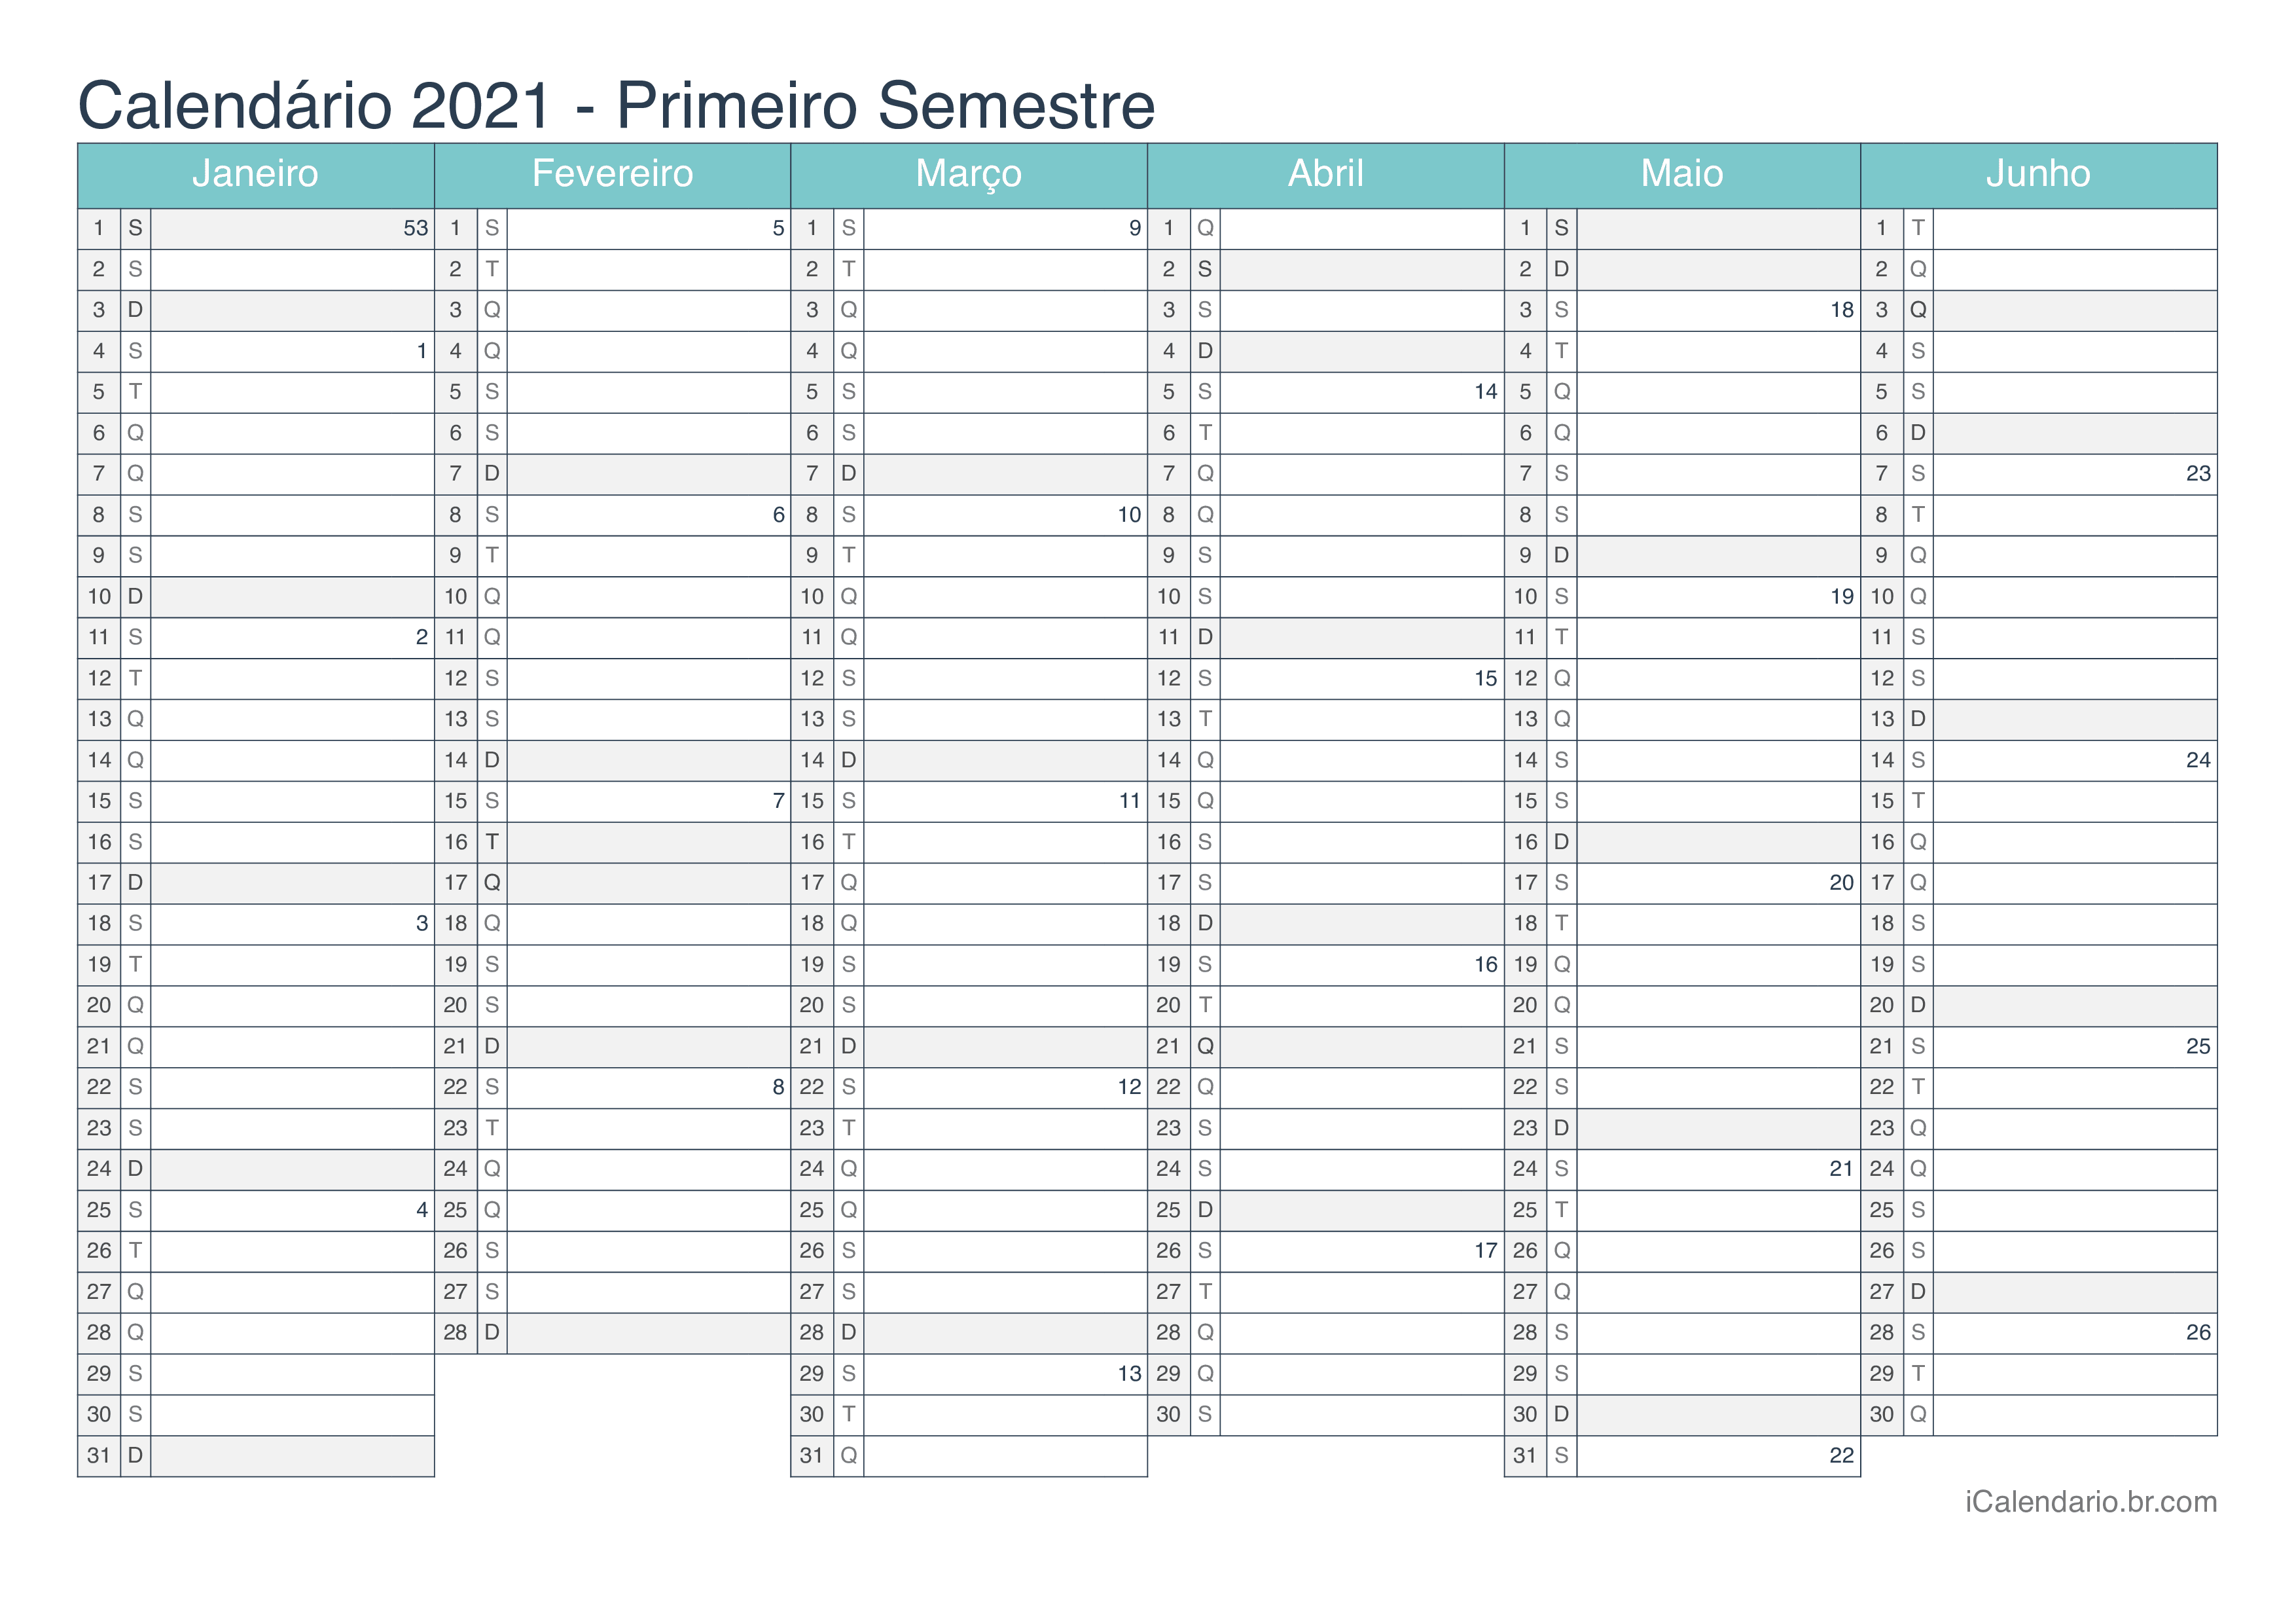 Calendário por semestre com números da semana 2021 - Turquesa